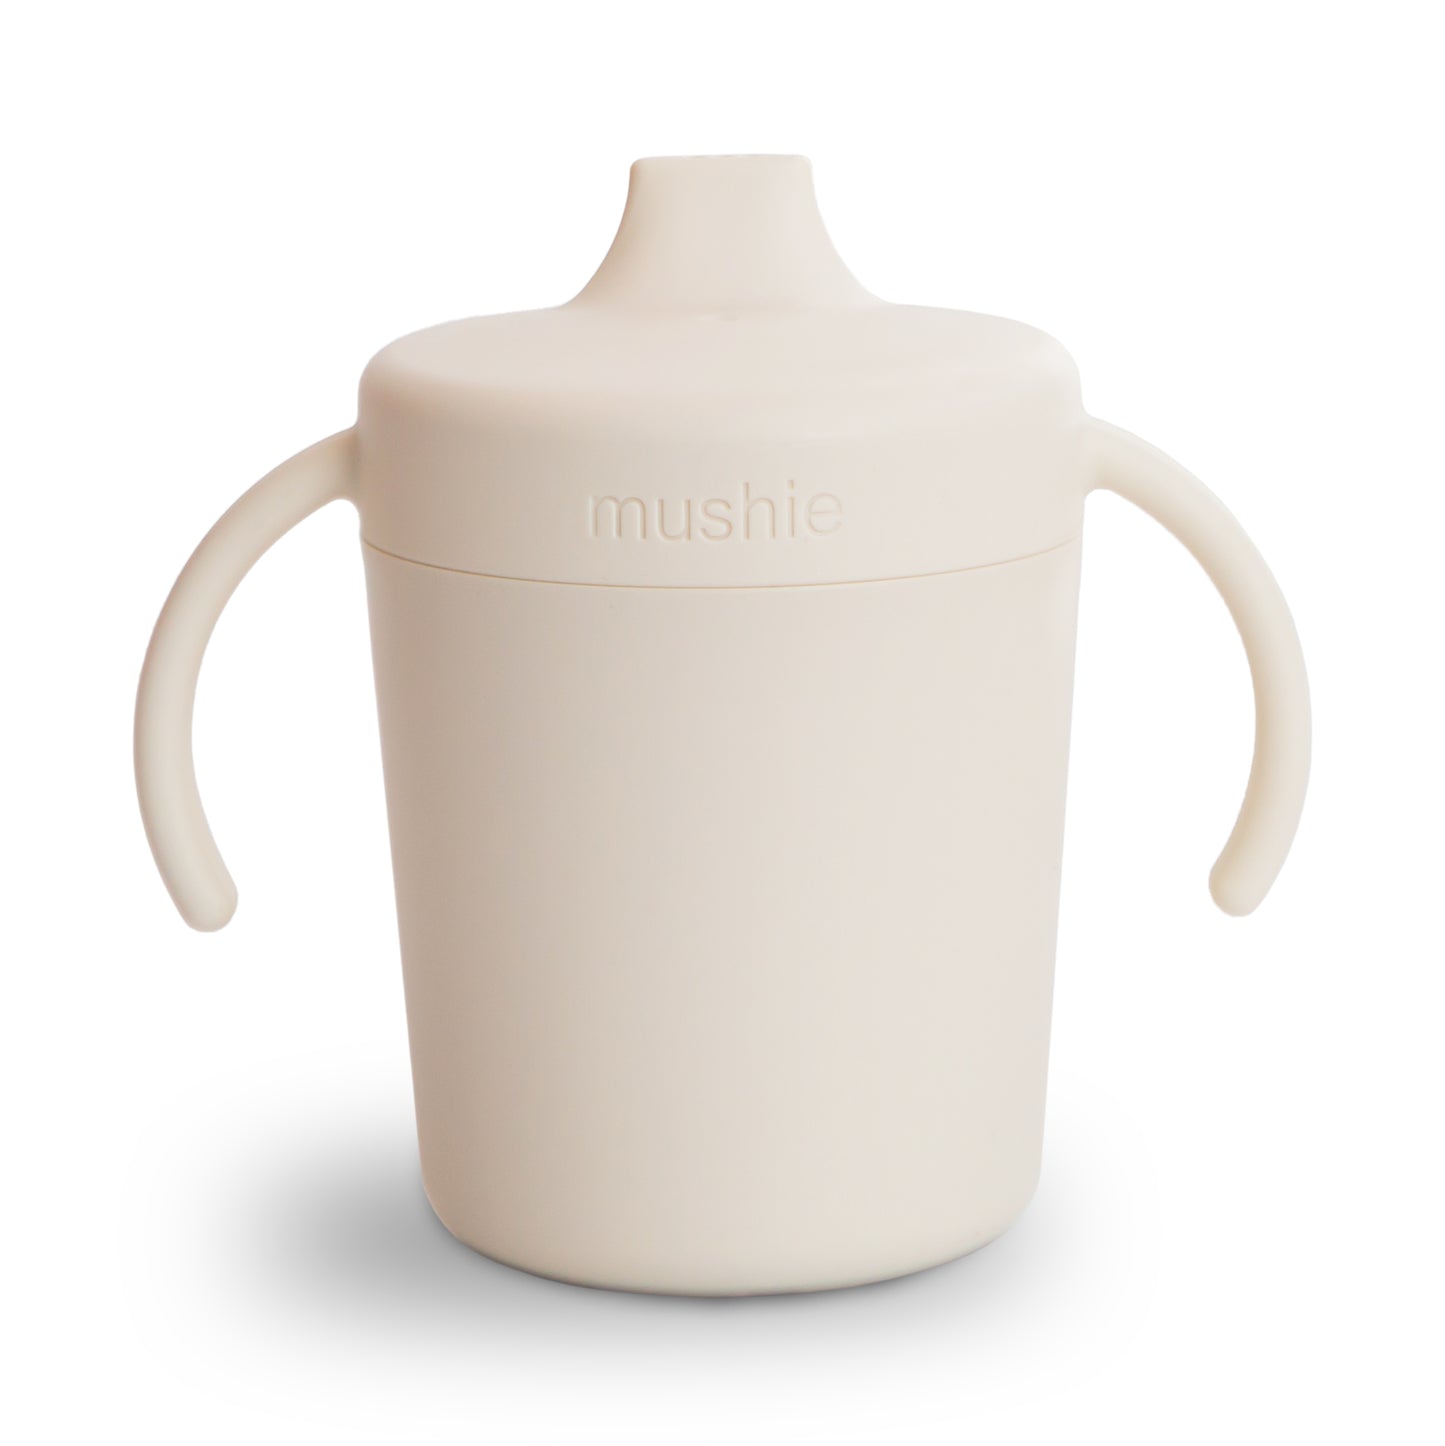 Mushie rainer sippy cup, oefen drinkbeker van het merk Mushie in kleur Ivory